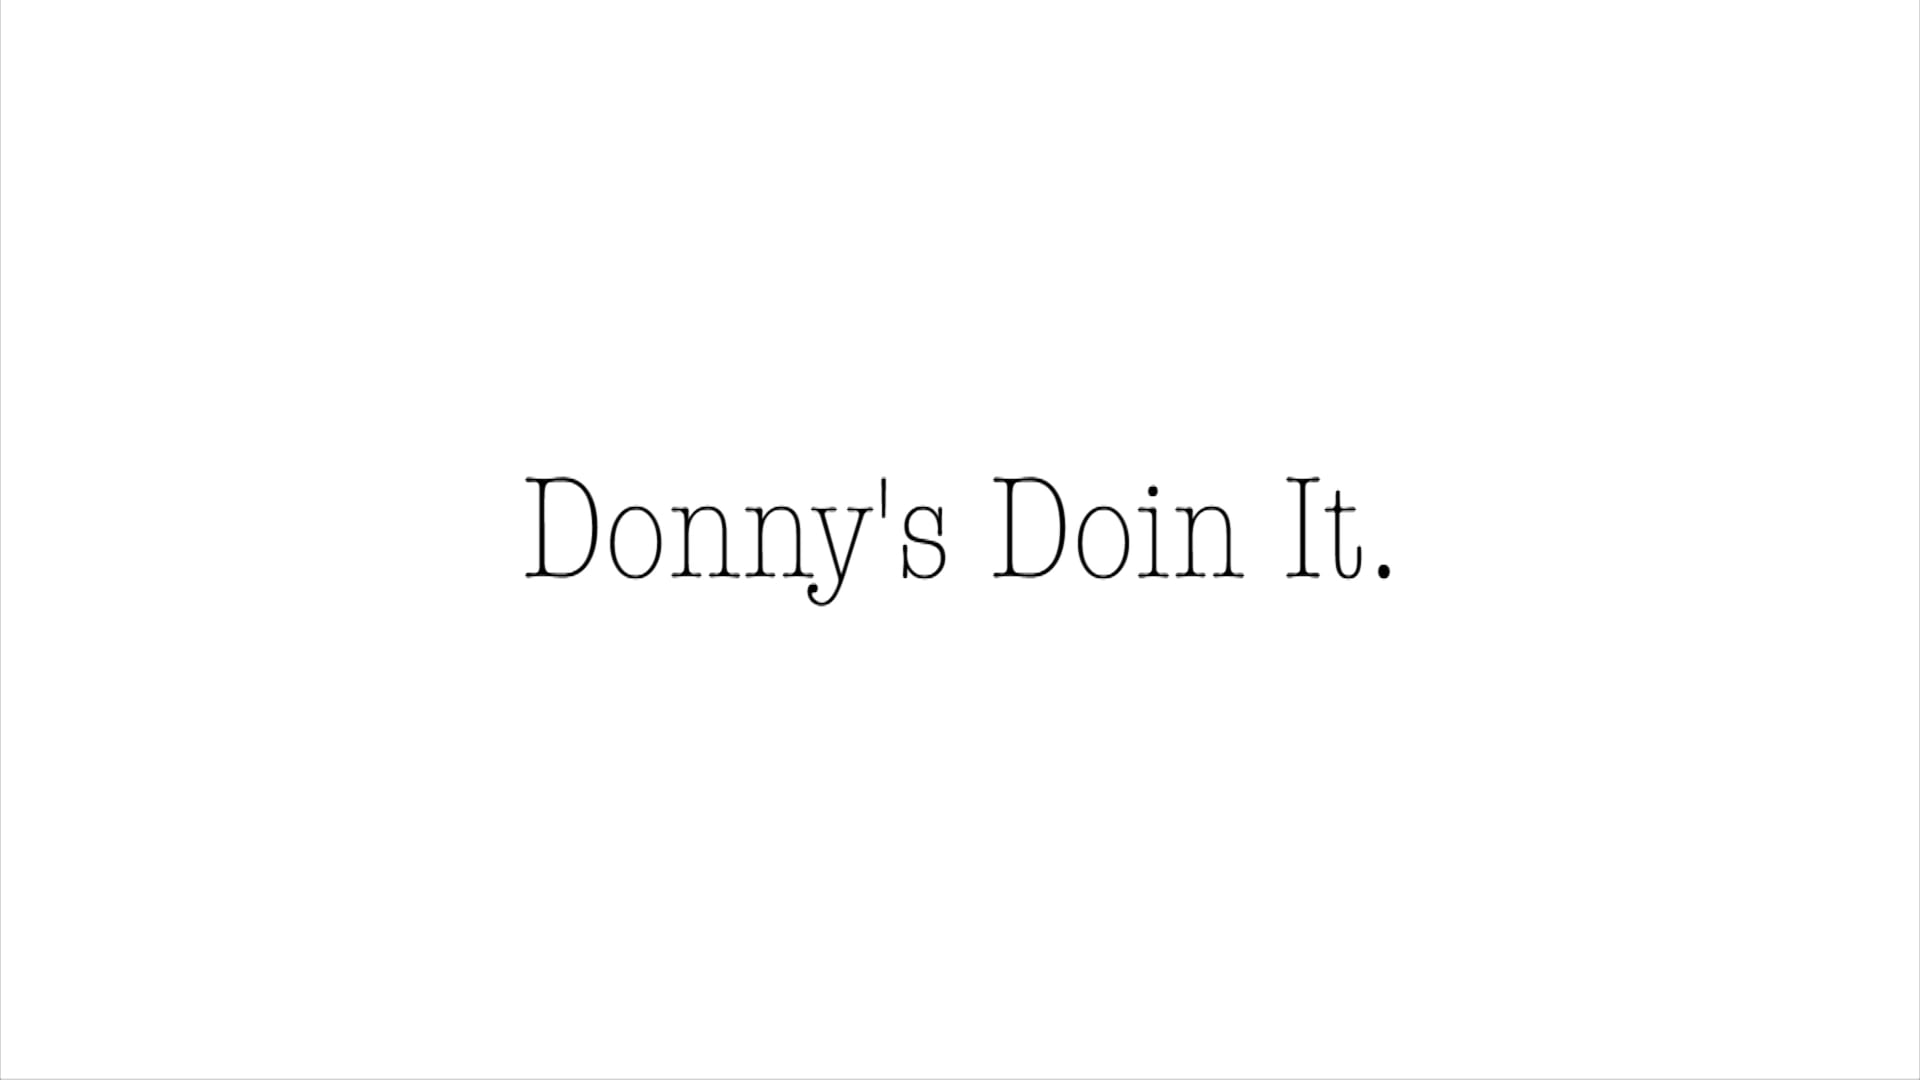 Donny's Doin It. (2017)